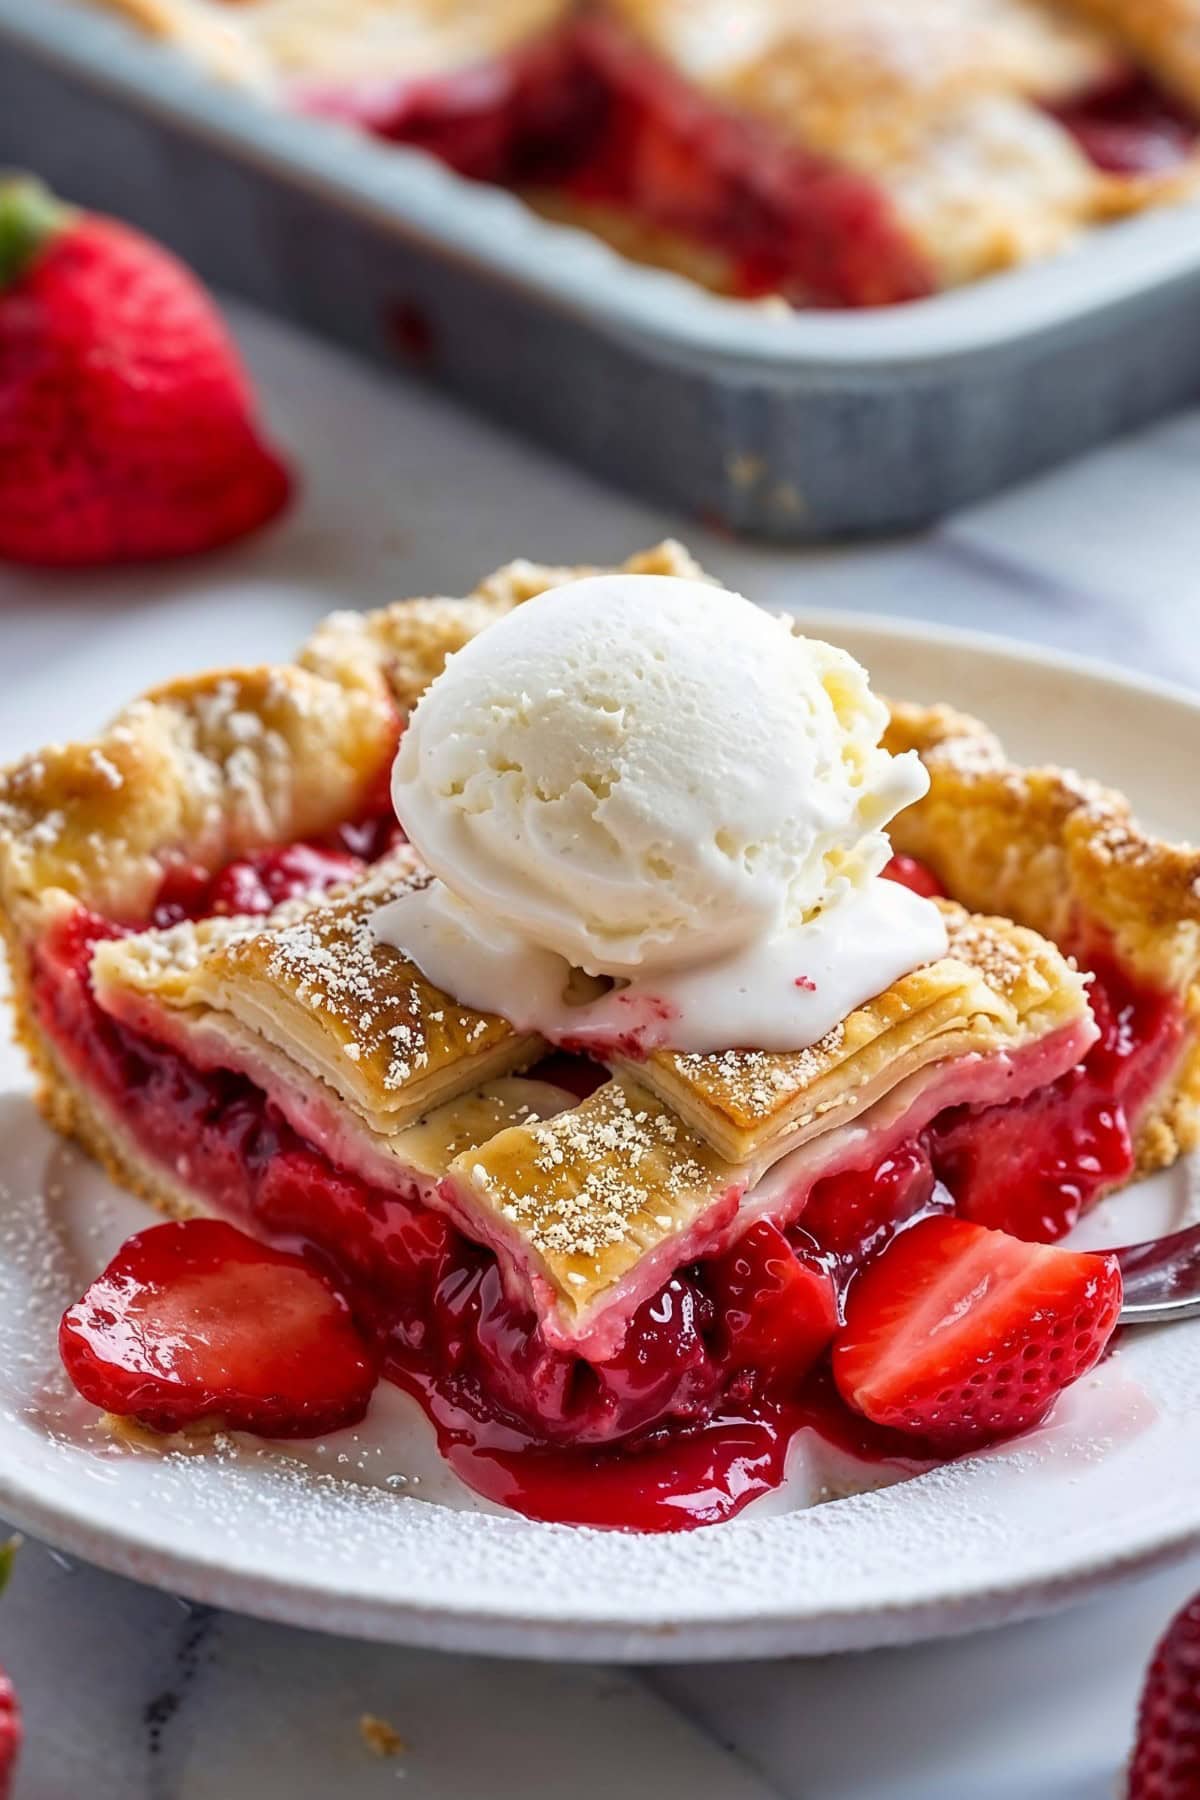 Slice of Strawberry Slab Pie with Vanilla Ice Cream on Top